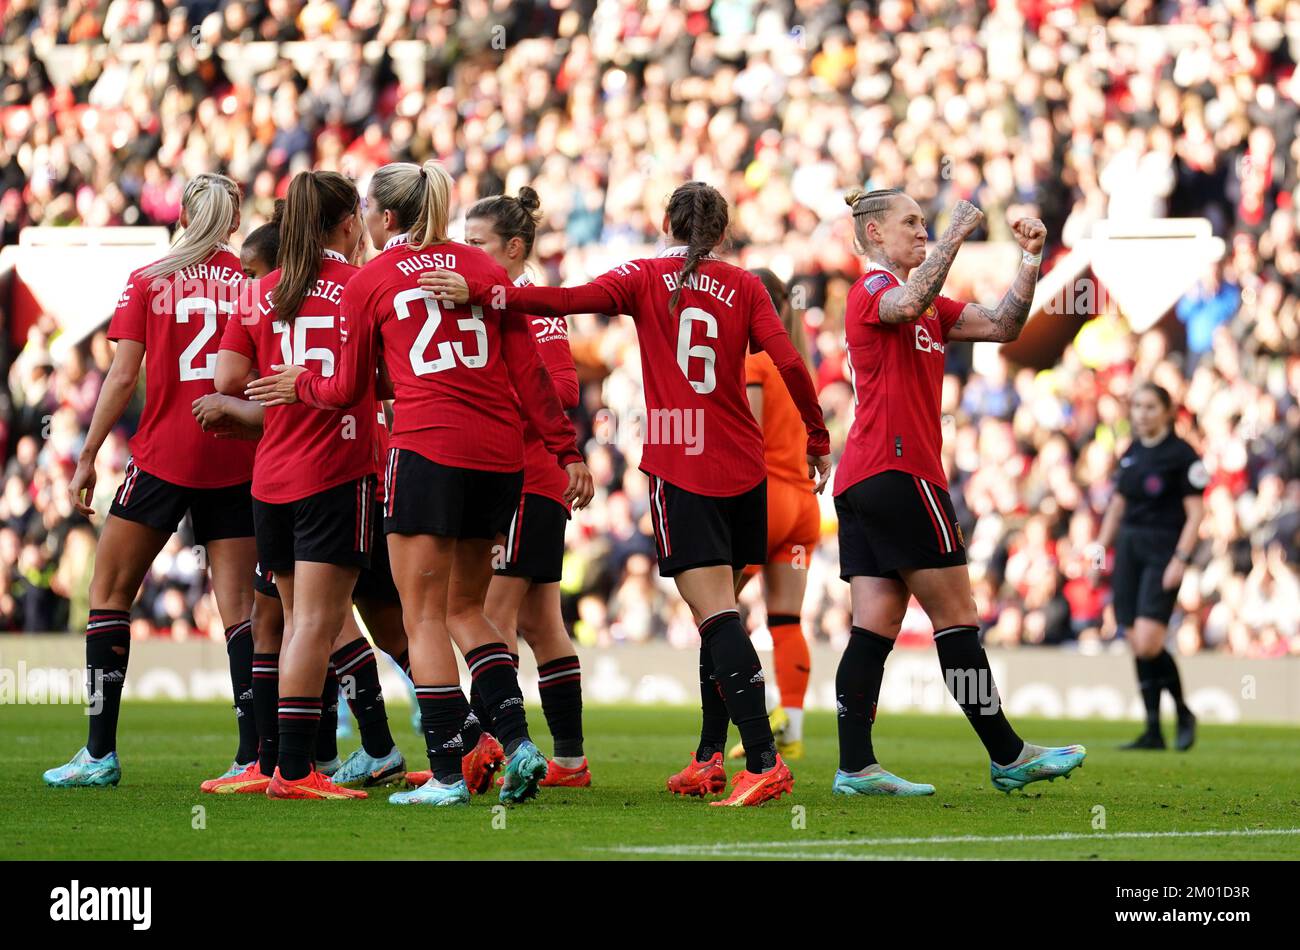 Leah Galton (derecha) del Manchester United celebra el segundo gol de su equipo durante el partido de la Superliga Femenina Barclays en Old Trafford, Manchester. Fecha de la foto: Sábado 3 de diciembre de 2022. Foto de stock